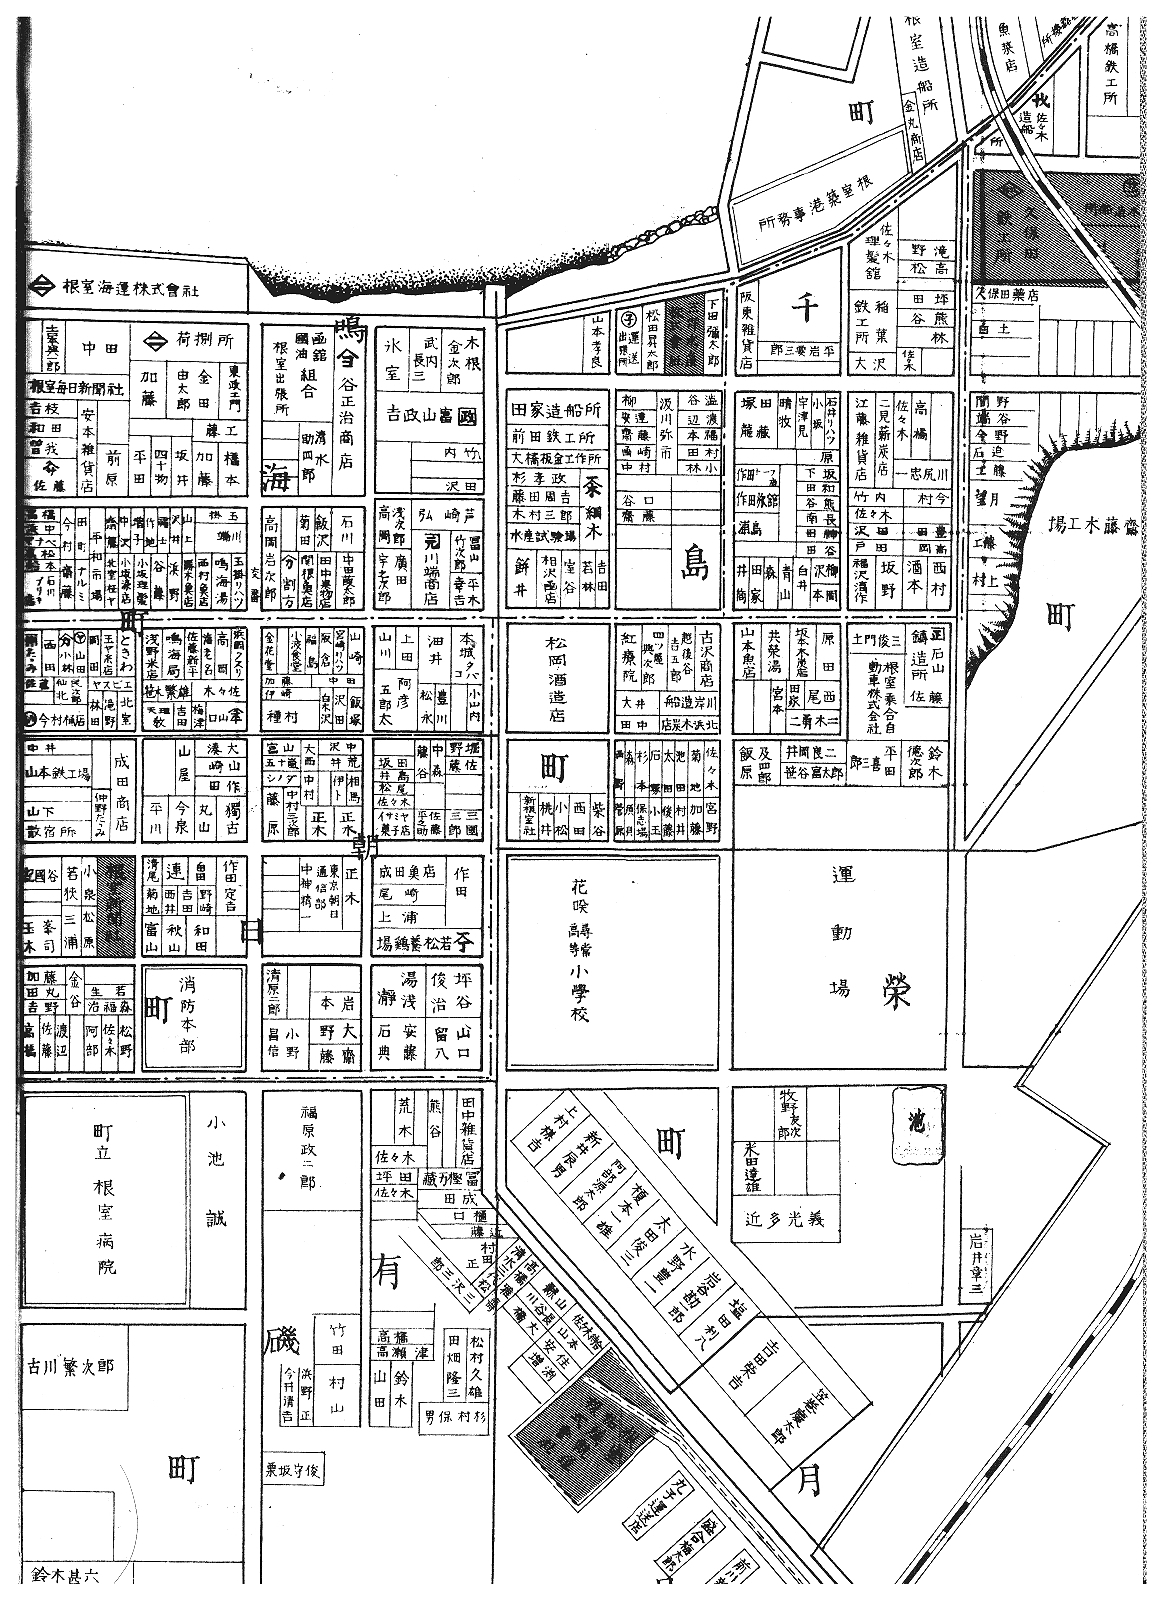 2021/11/23】昭和11年根室市街図2分割をアップ、◎昭和4年(1929)根室町 